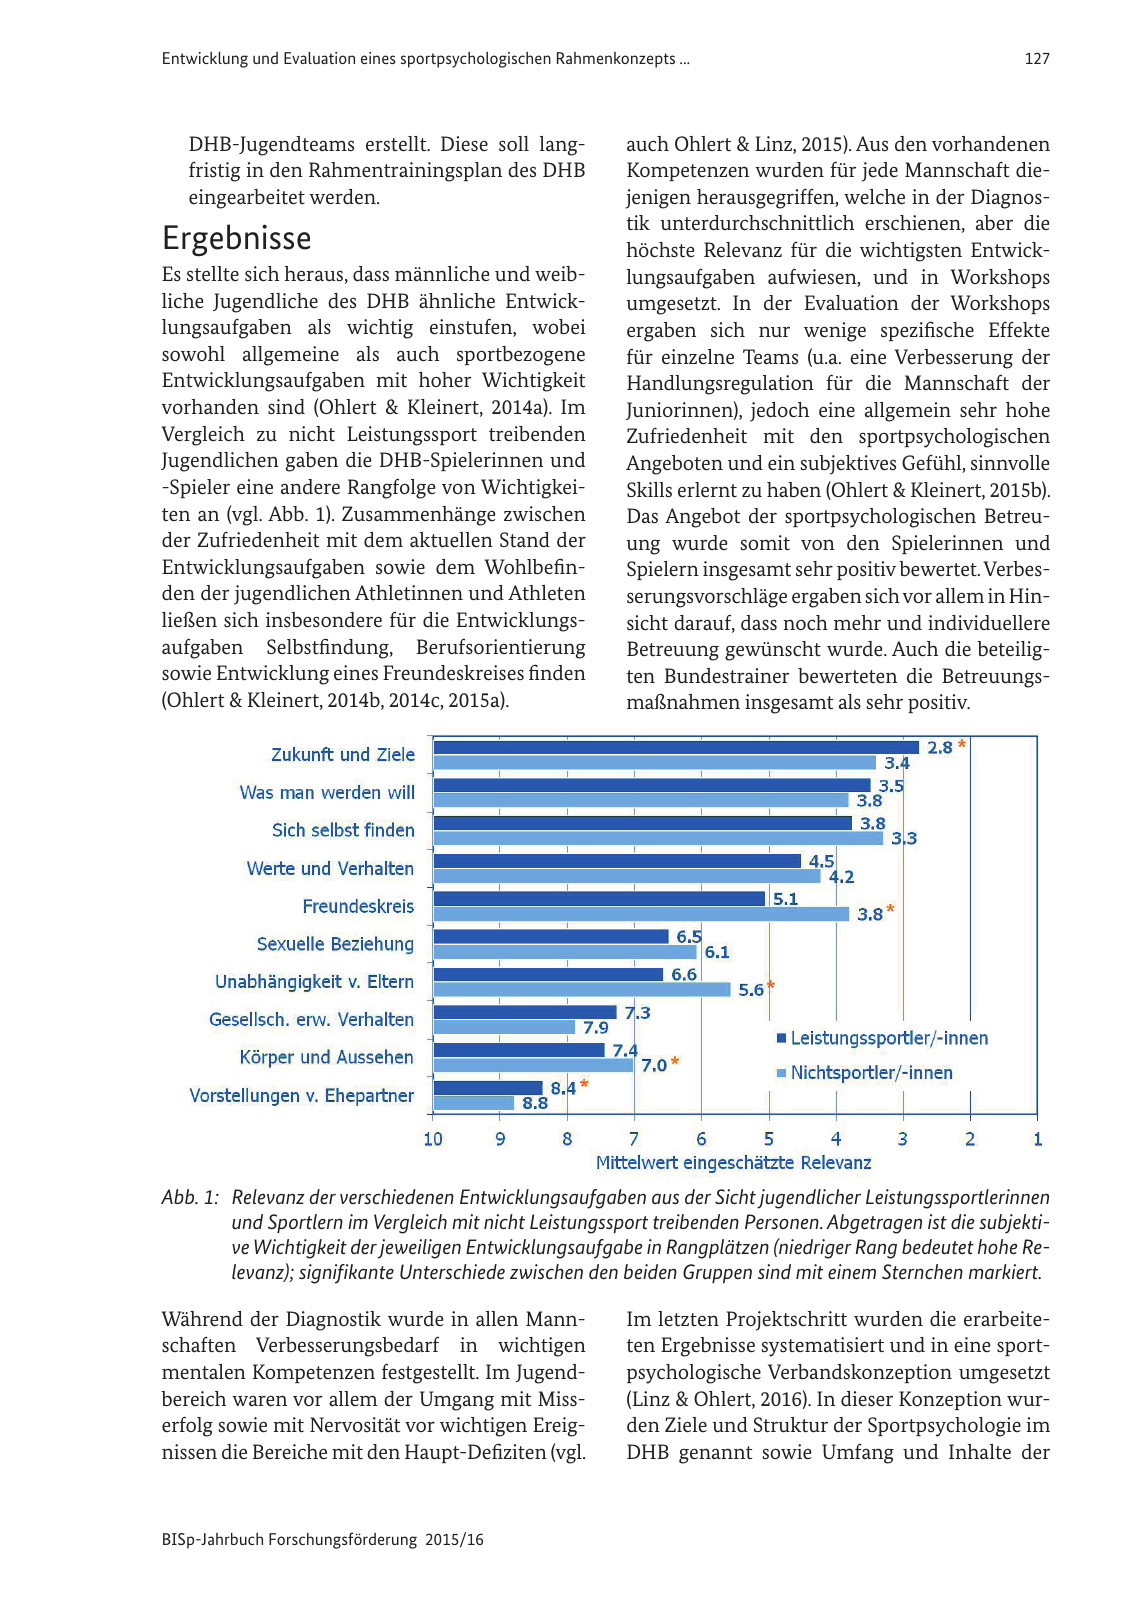 Vorschau BISp-Jahrbuch Forschungsförderung 2015/16 Seite 129